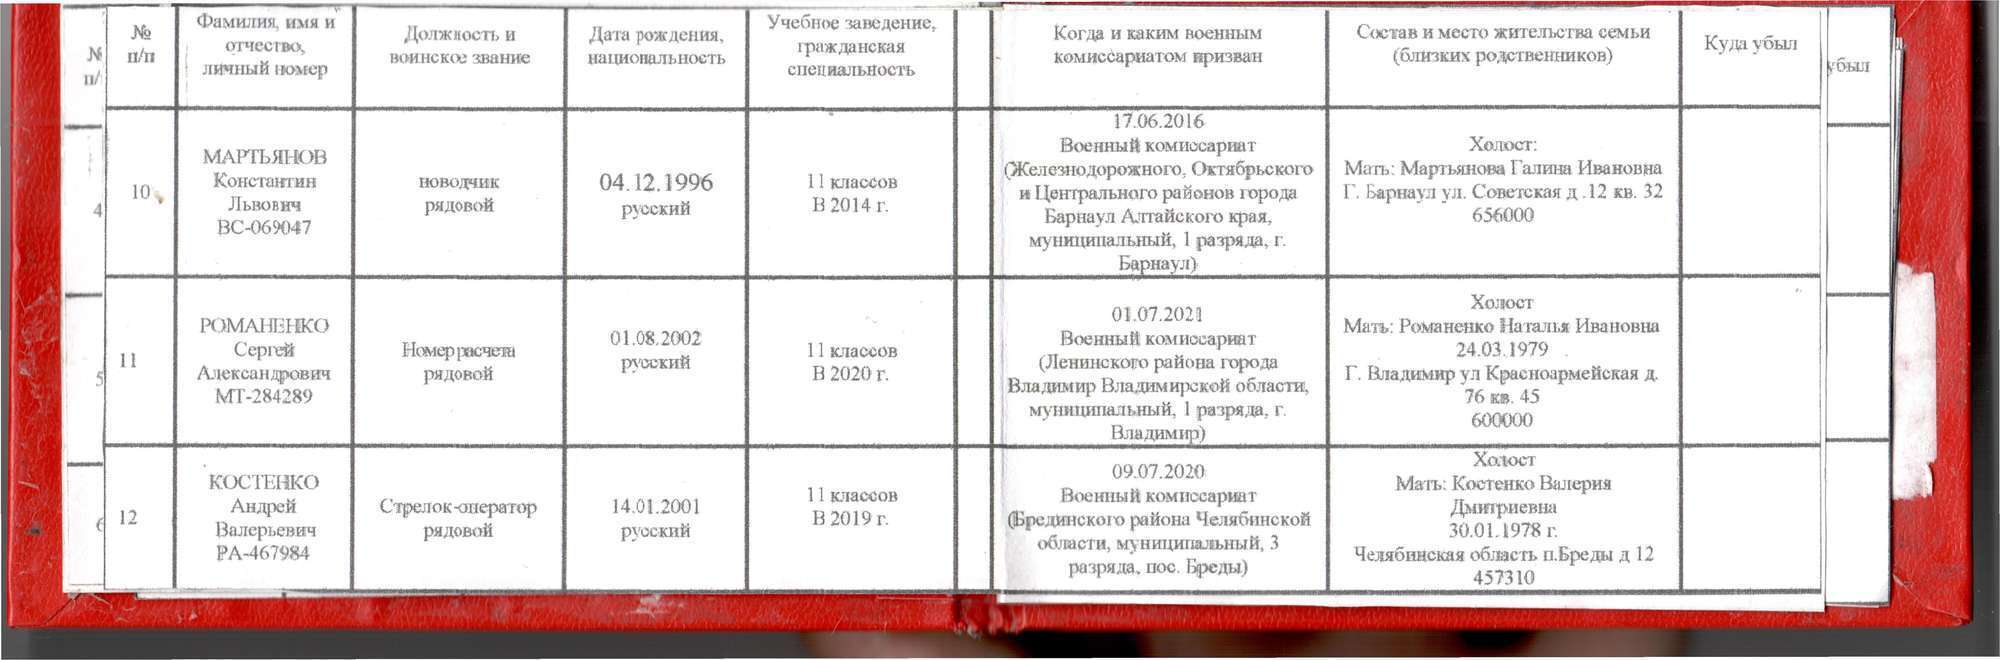 В списках также указаны персональные данные членов семей палачей украинского народа